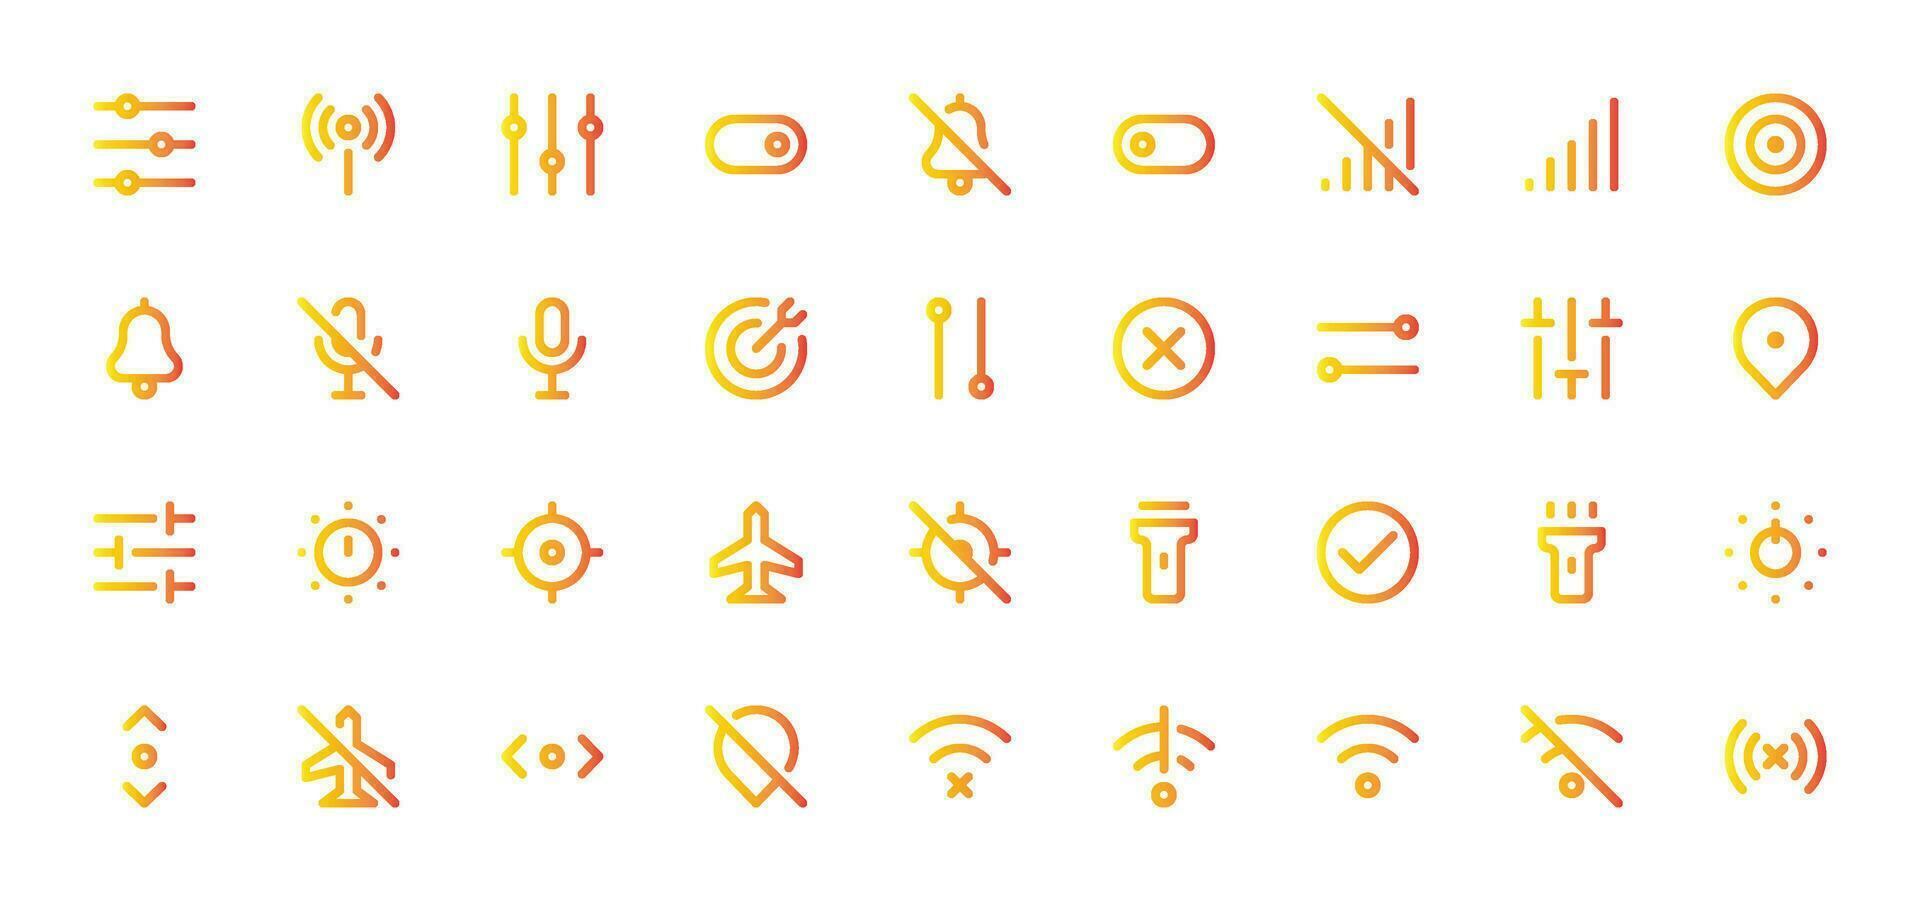 växlar ikon uppsättning - växlar, kontroller, gränssnitt toggle symboler vektor